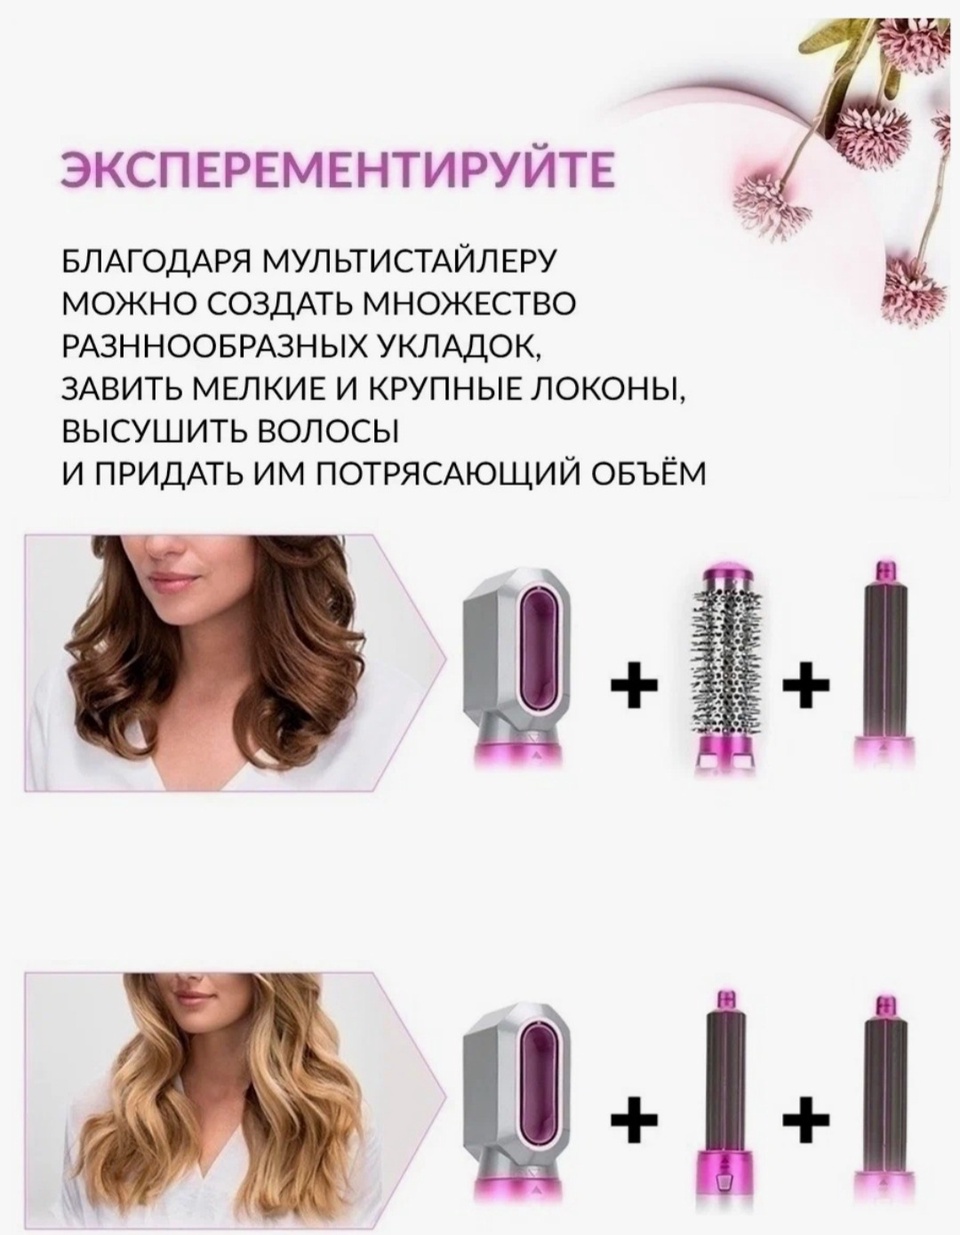 Мультистайлер для волос 5 в 1 - 2 100 ₽, заказать онлайн.